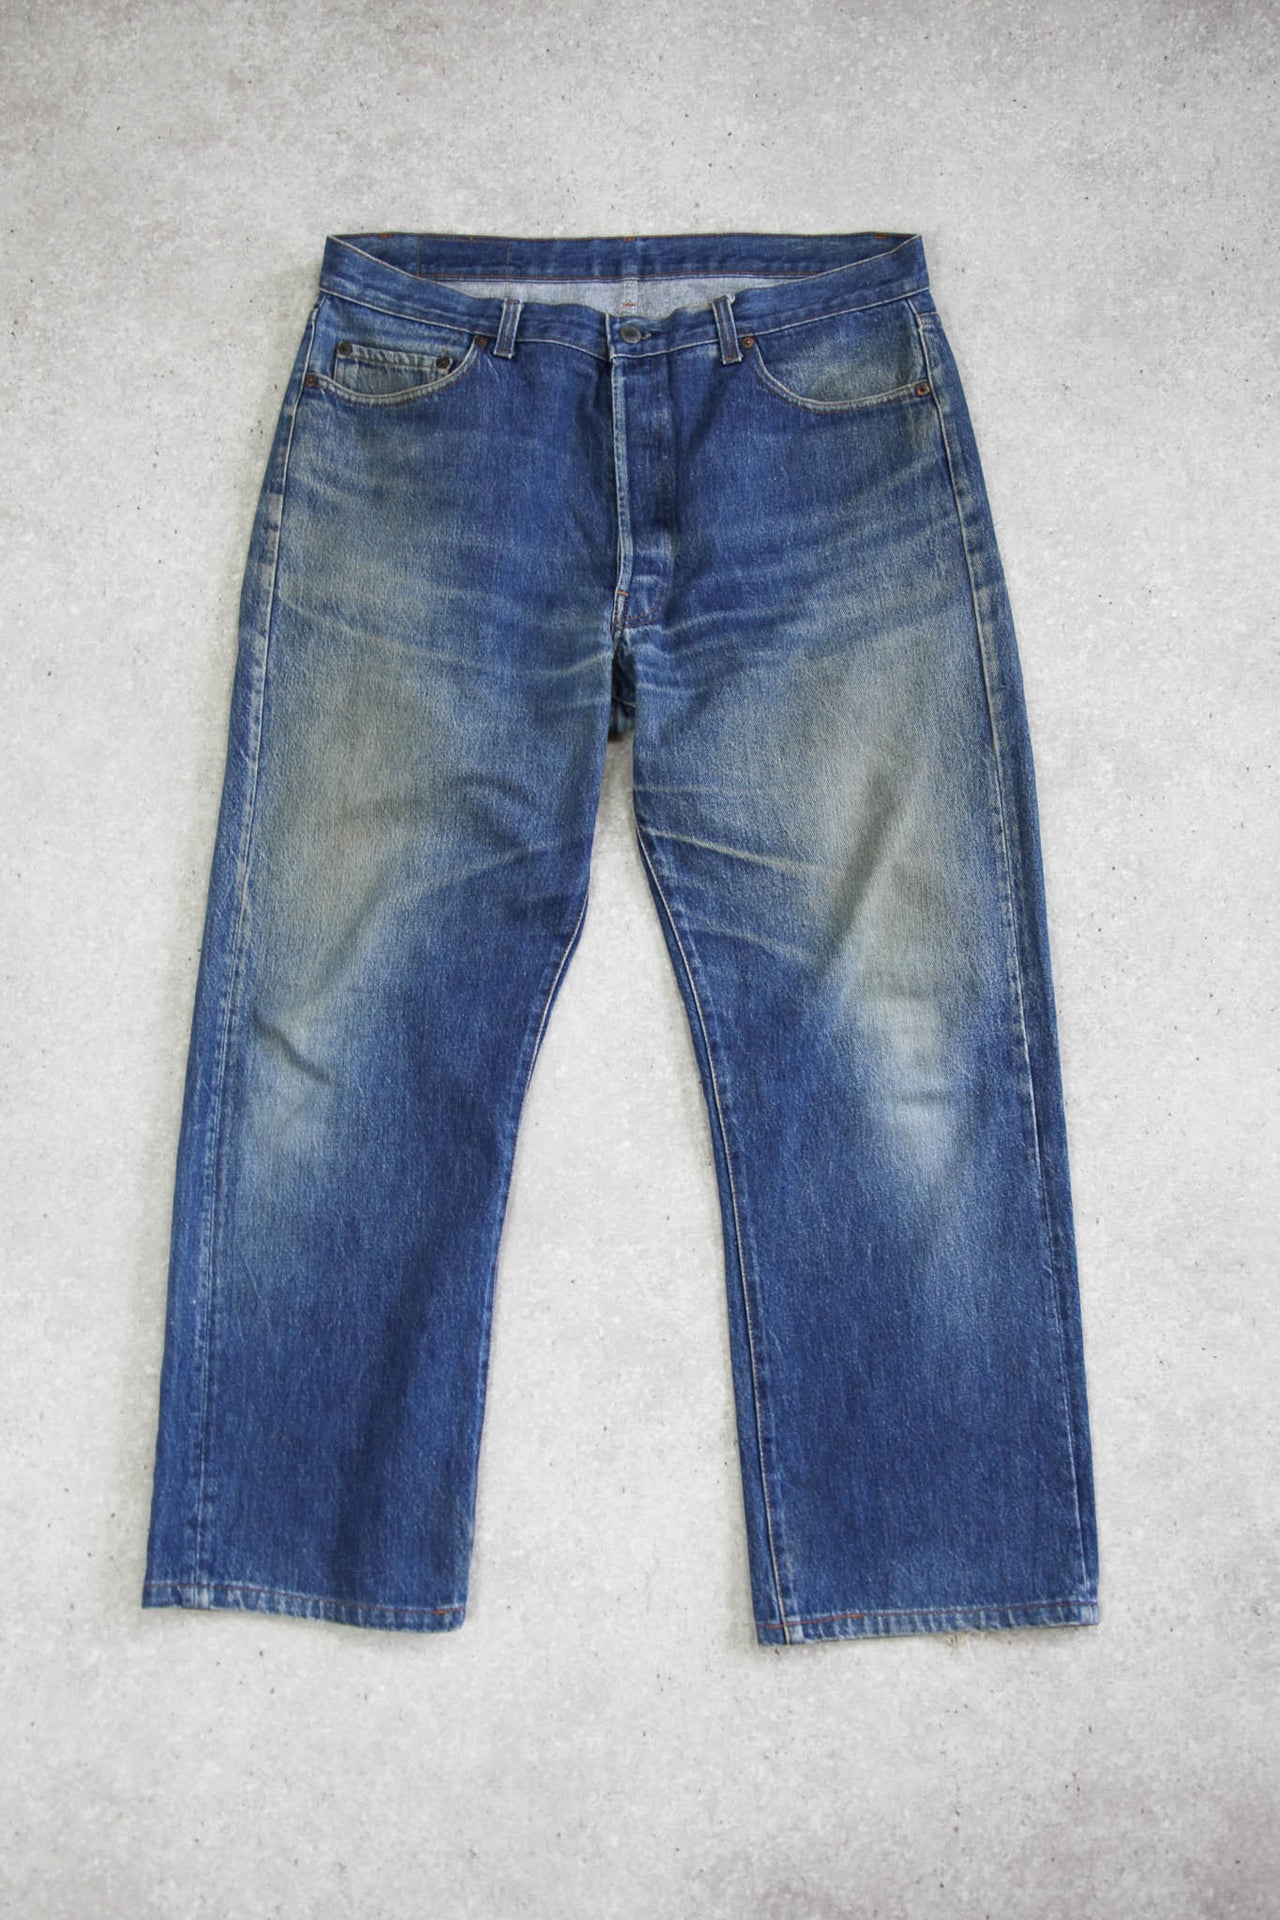 Levi's 501 Faded Dark Wash Jeans (W36 L28)